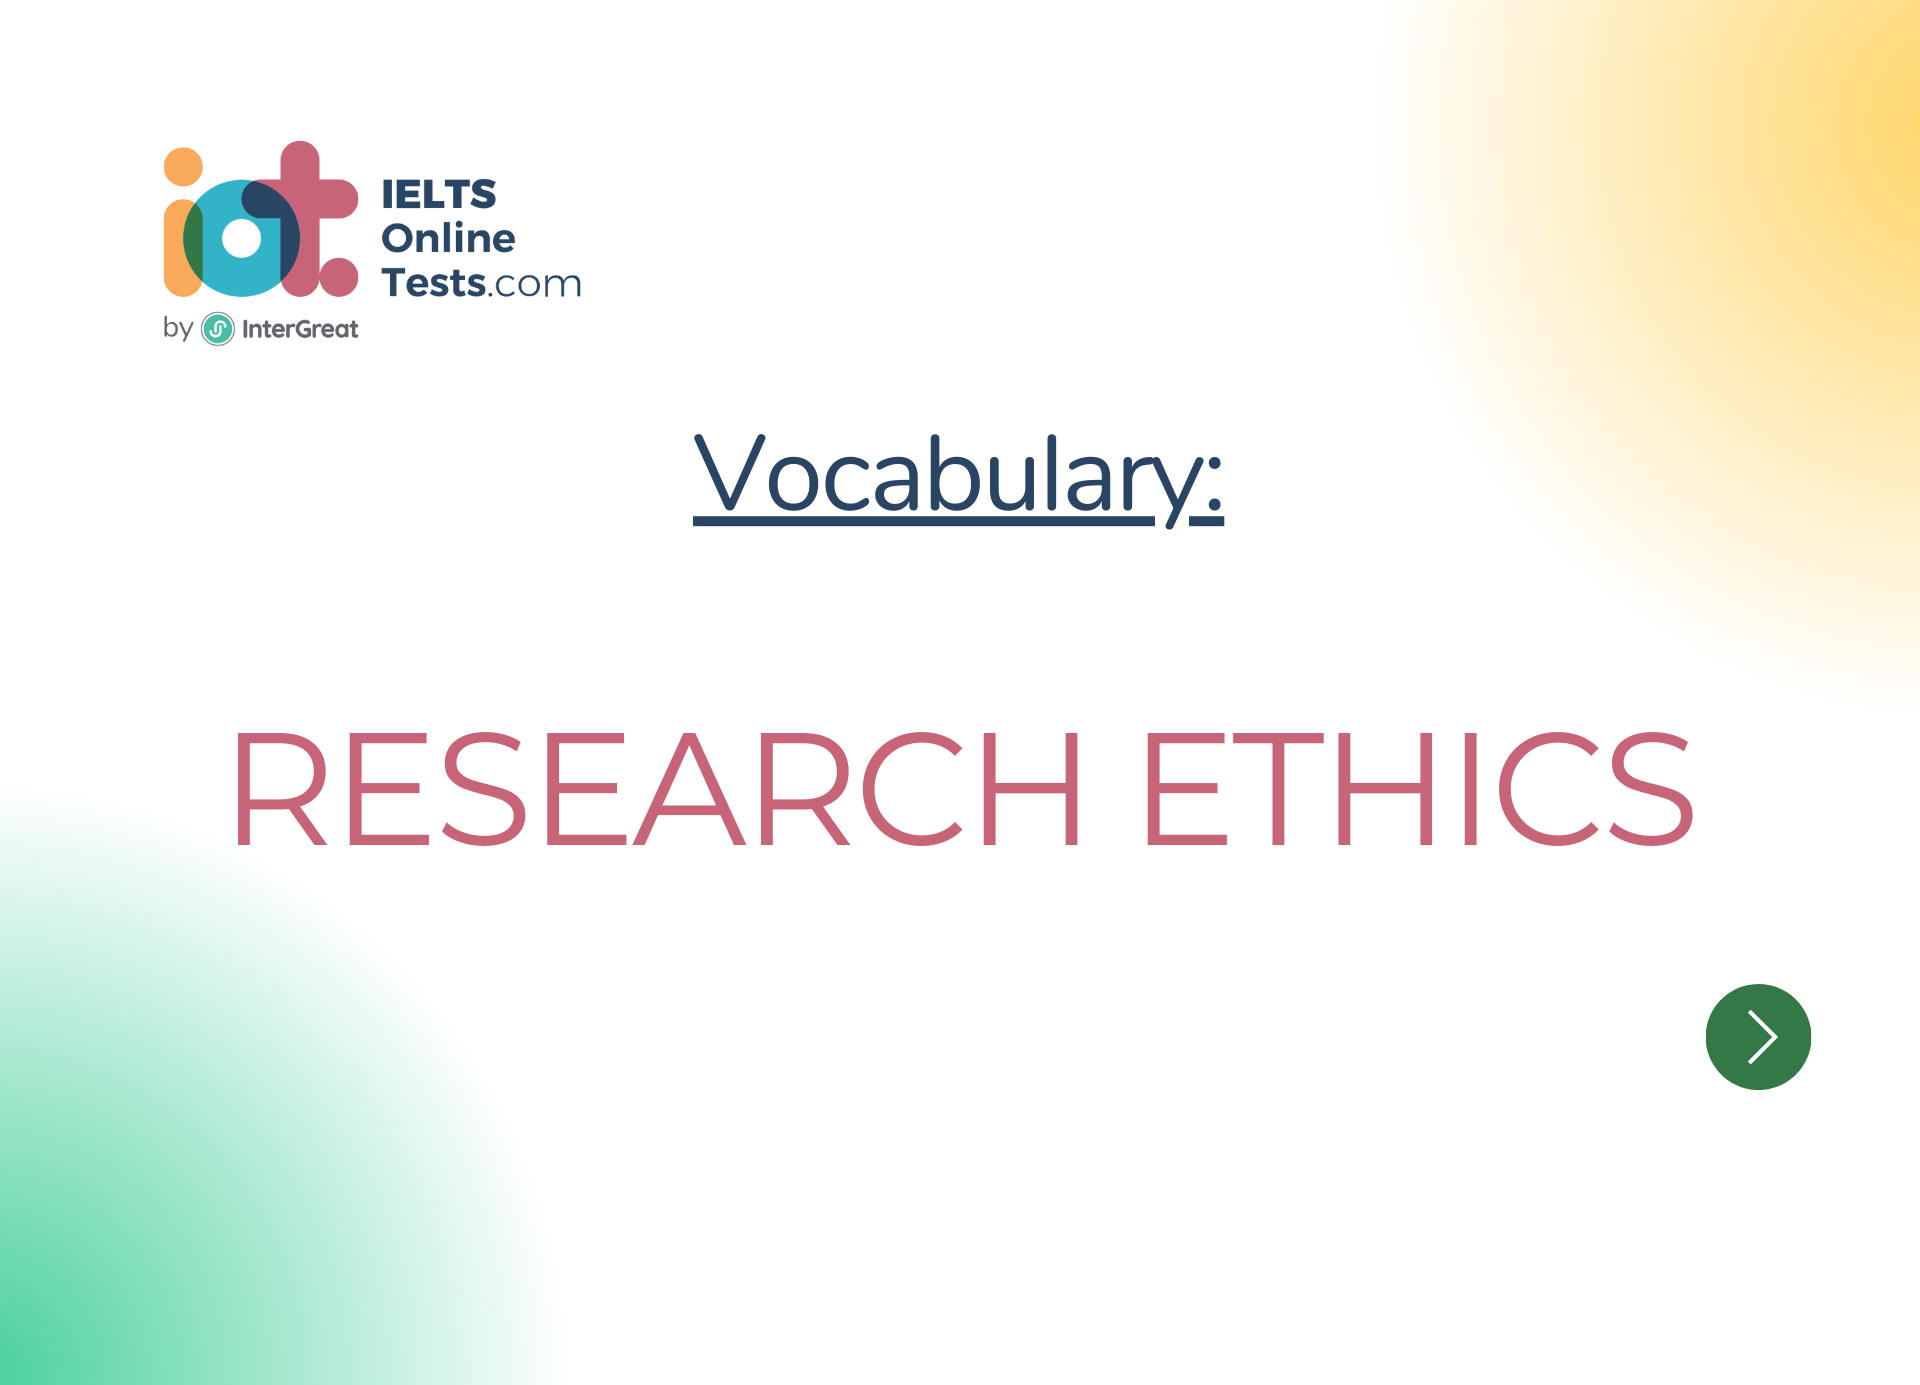 Đạo đức trong nghiên cứu (Research ethics)